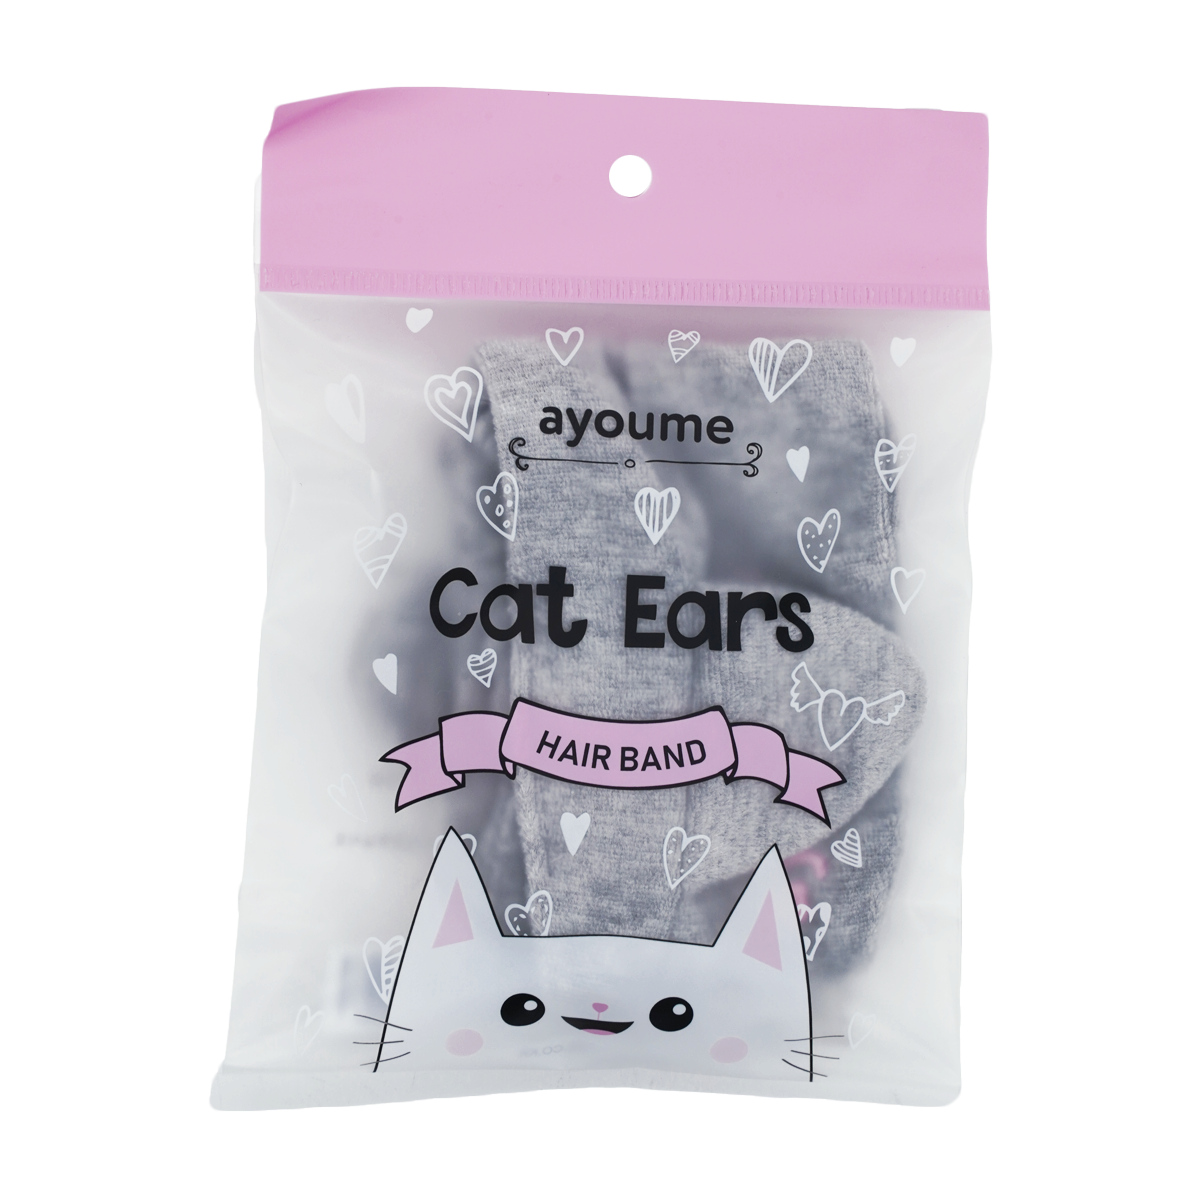 картинка Ayoume Повязка для волос Hair Band Cat Ears 1шт